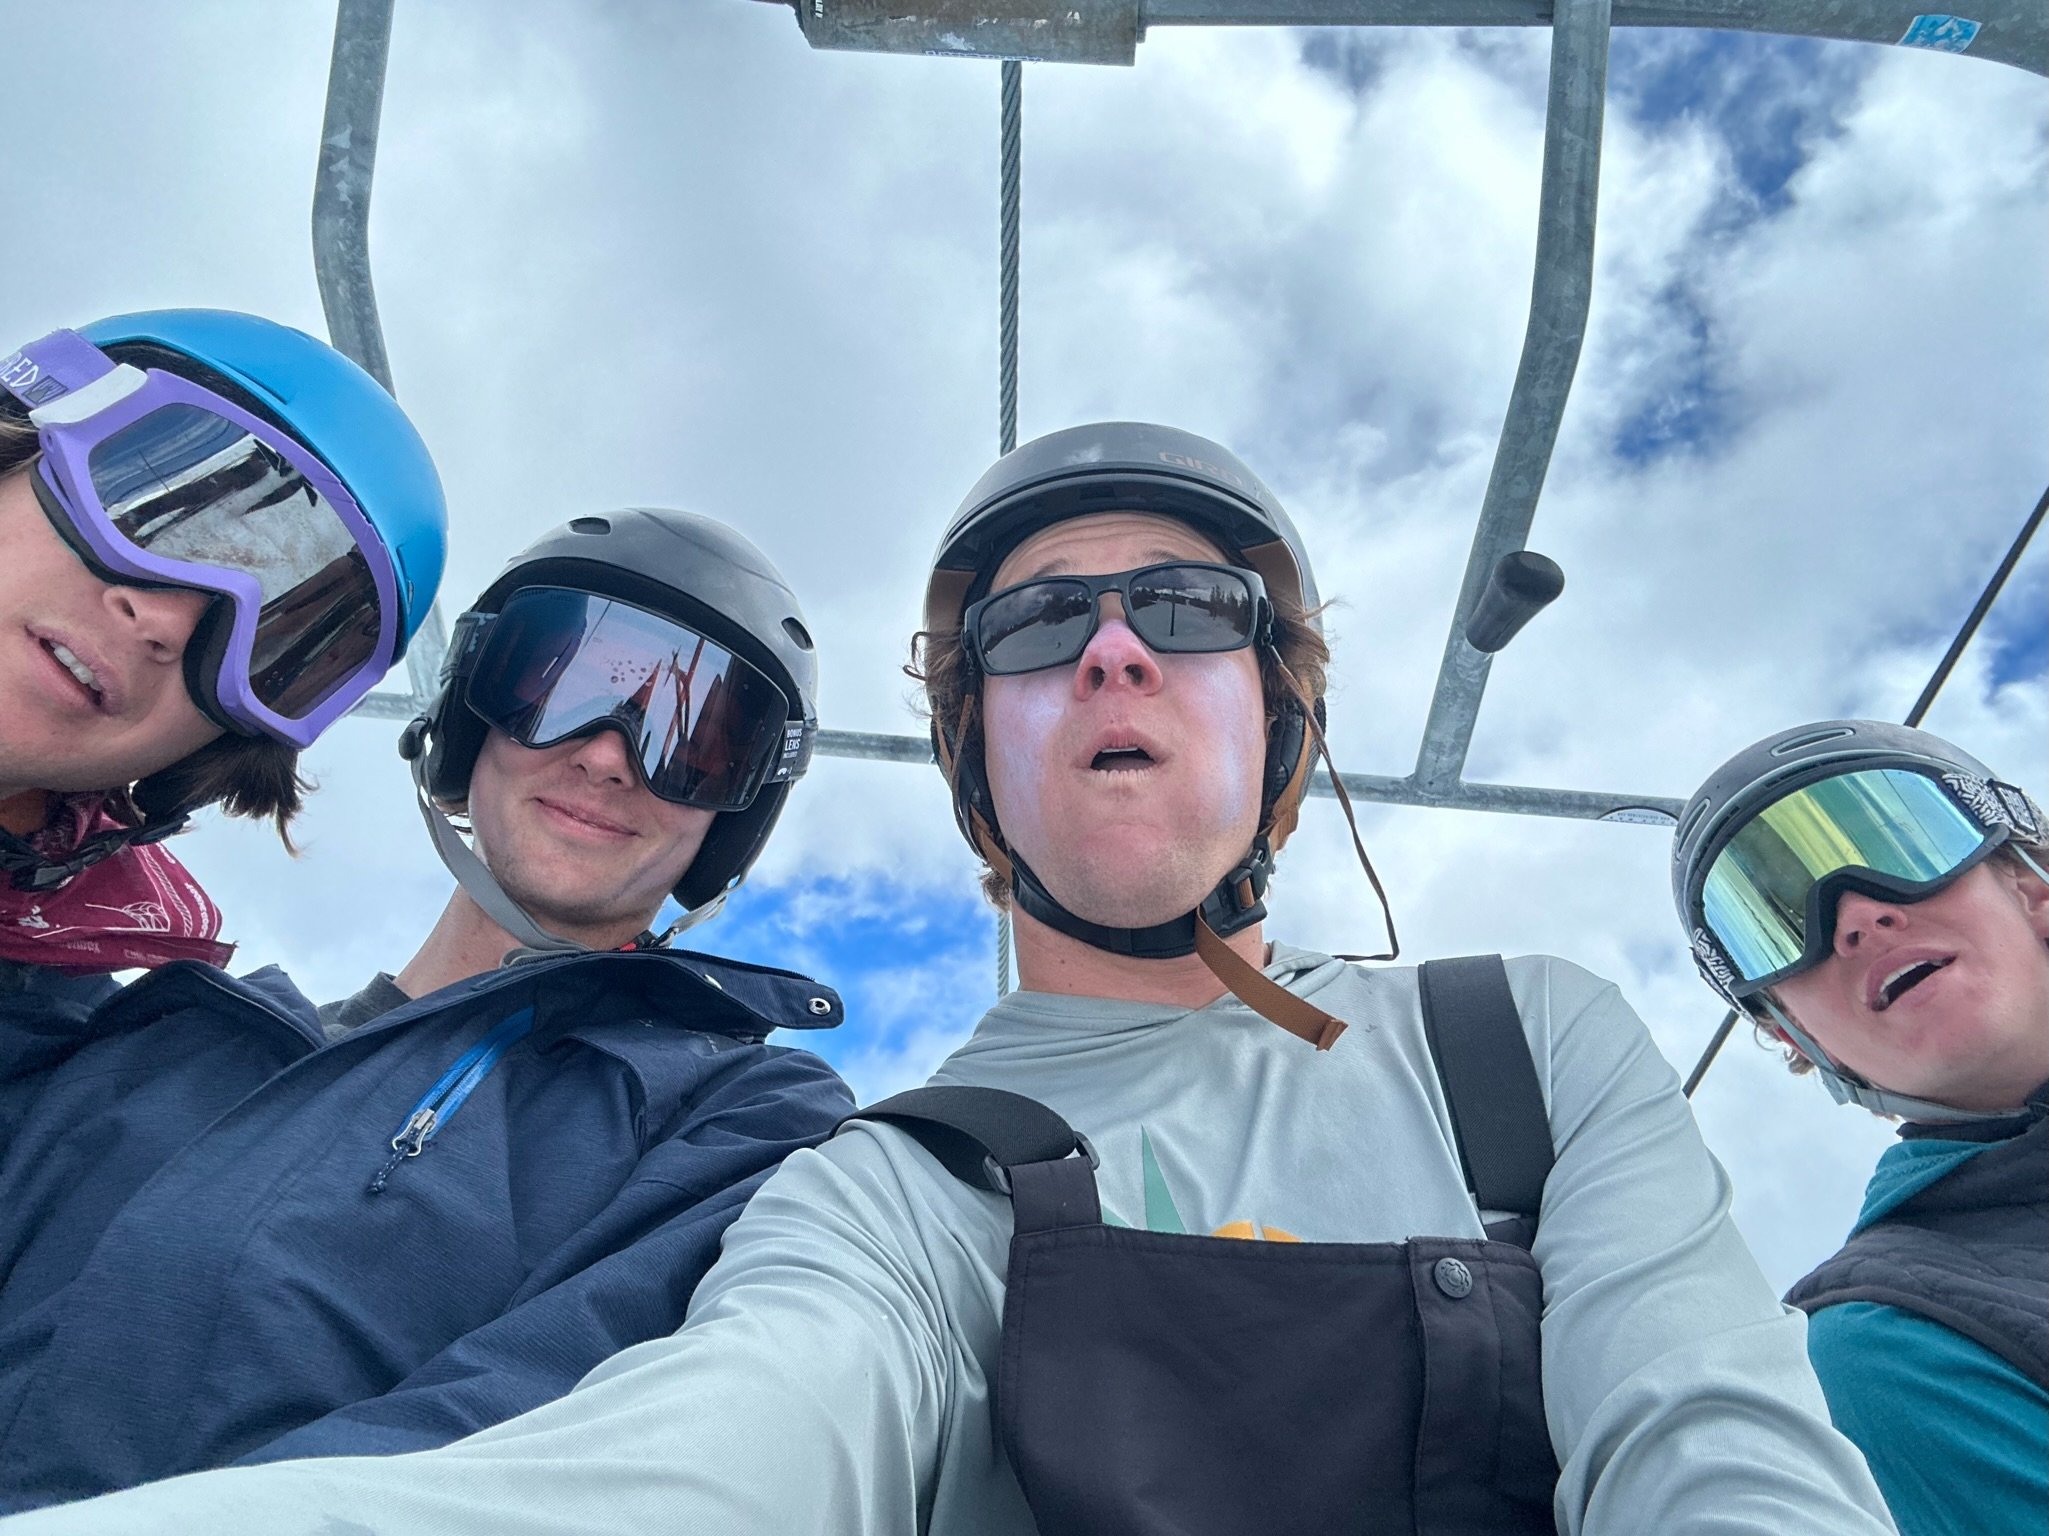 Skiing Mount Bachelor with B - Rad